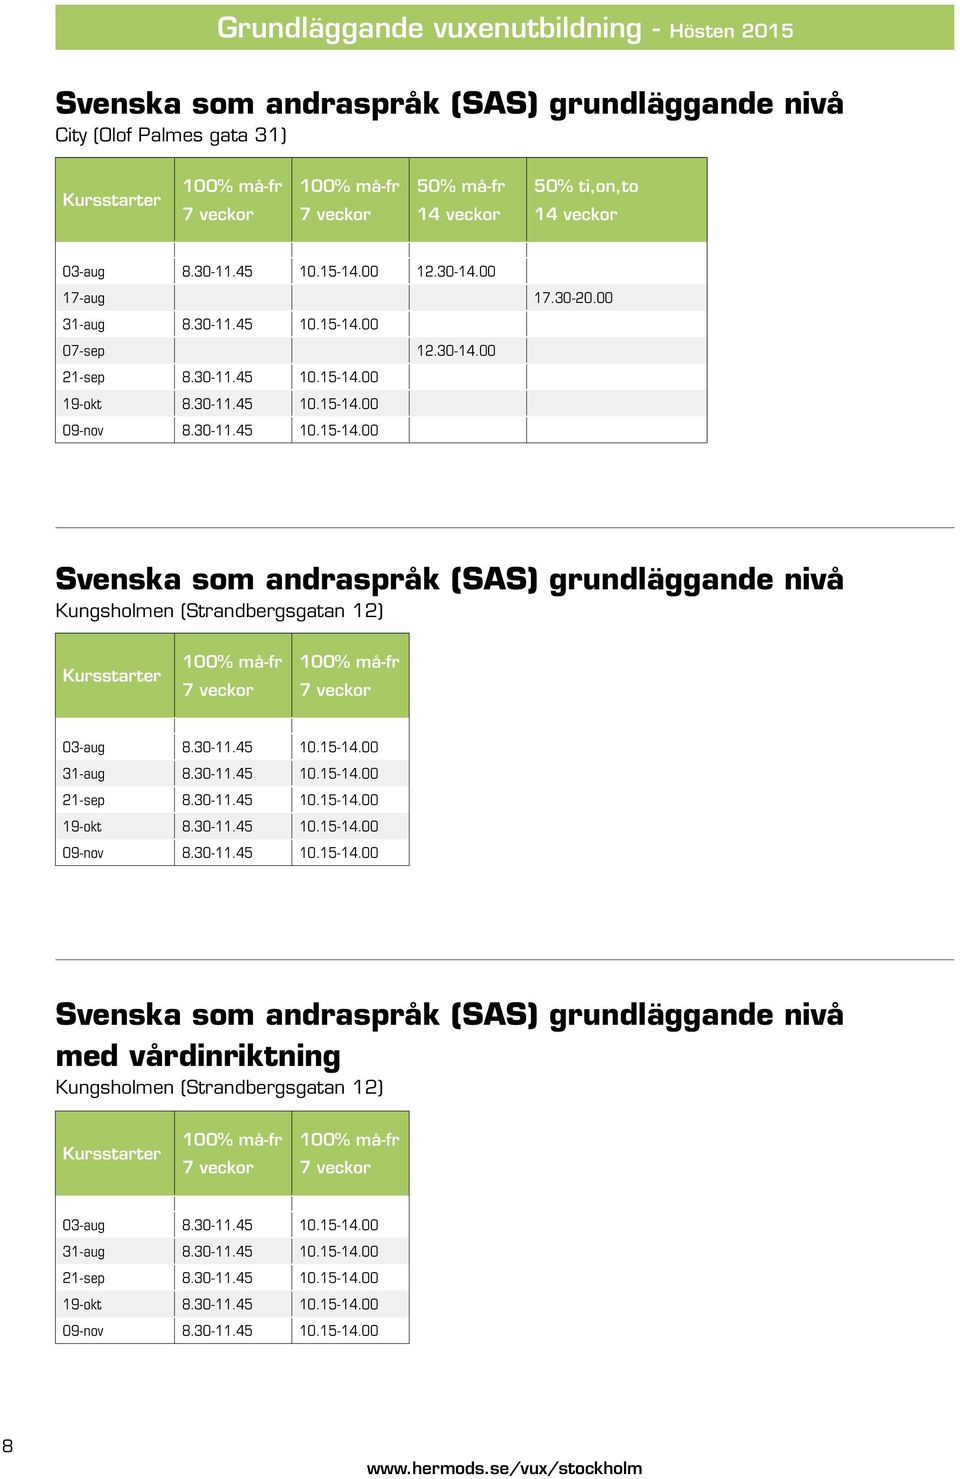 30-11.45 10.15-14.00 Svenska som andraspråk (SAS) grundläggande nivå Kungsholmen (Strandbergsgatan 12) Kursstarter 100% må-fr 7 veckor 100% må-fr 7 veckor 03-aug 8.30-11.45 10.15-14.00 31-aug 8.30-11.45 10.15-14.00 21-sep 8.